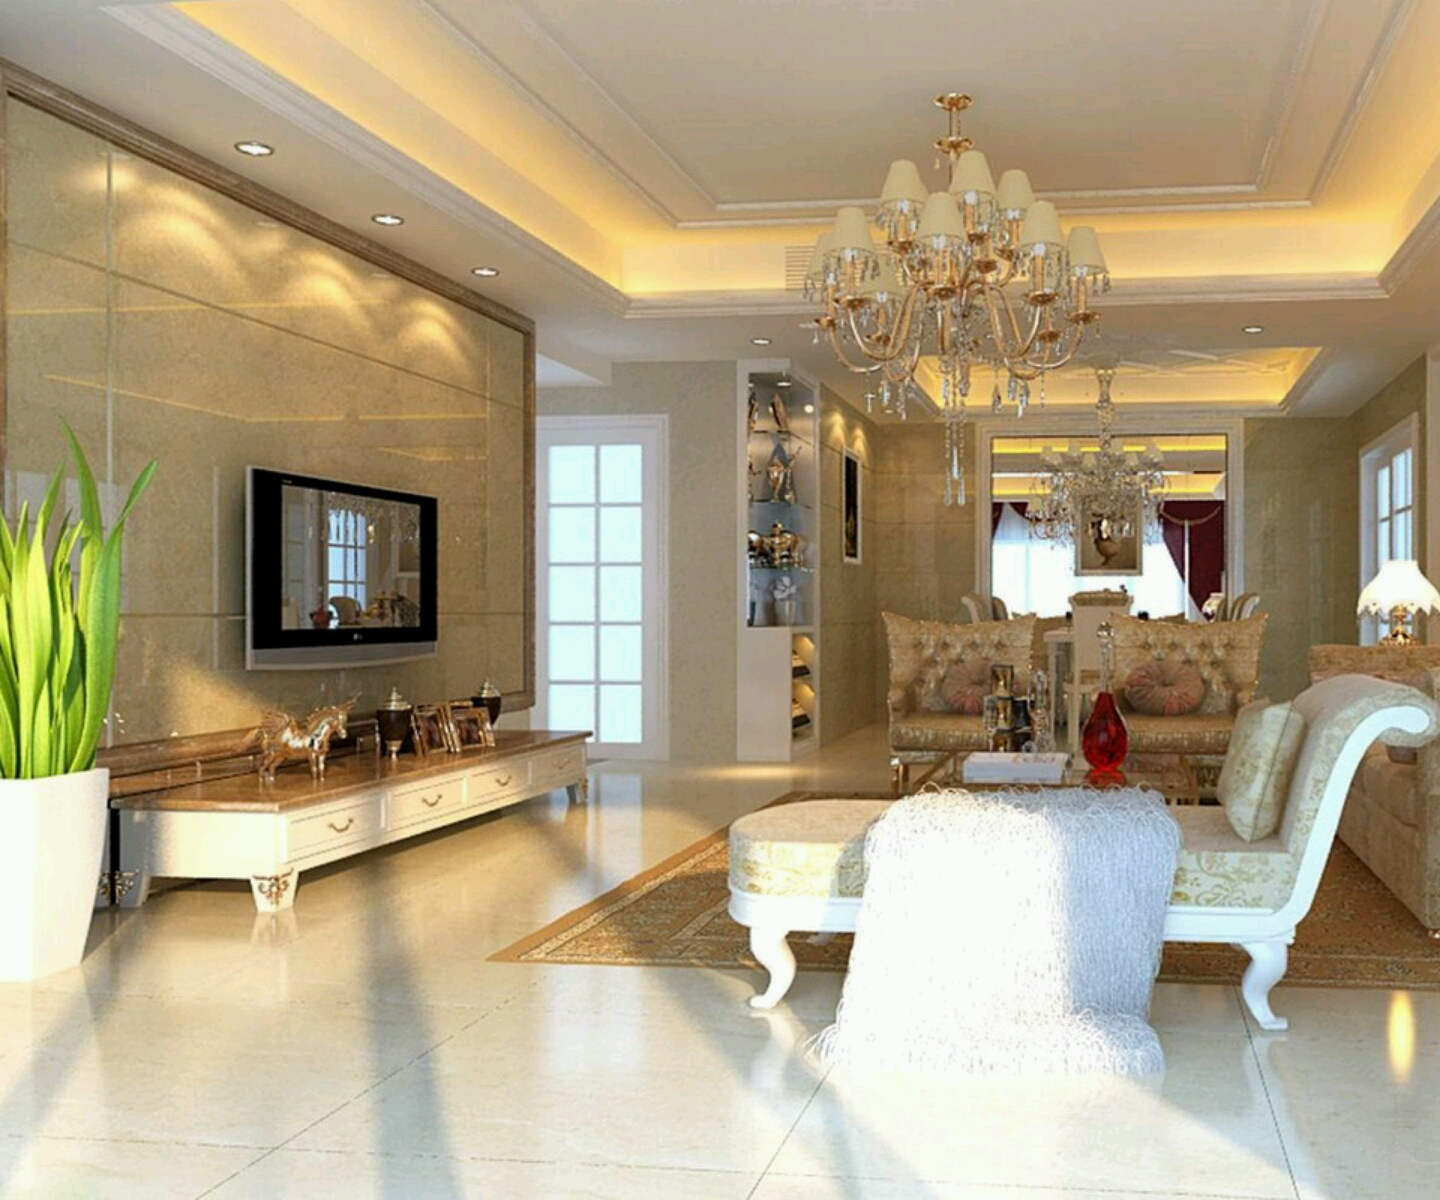 Home Decor Design Ideas